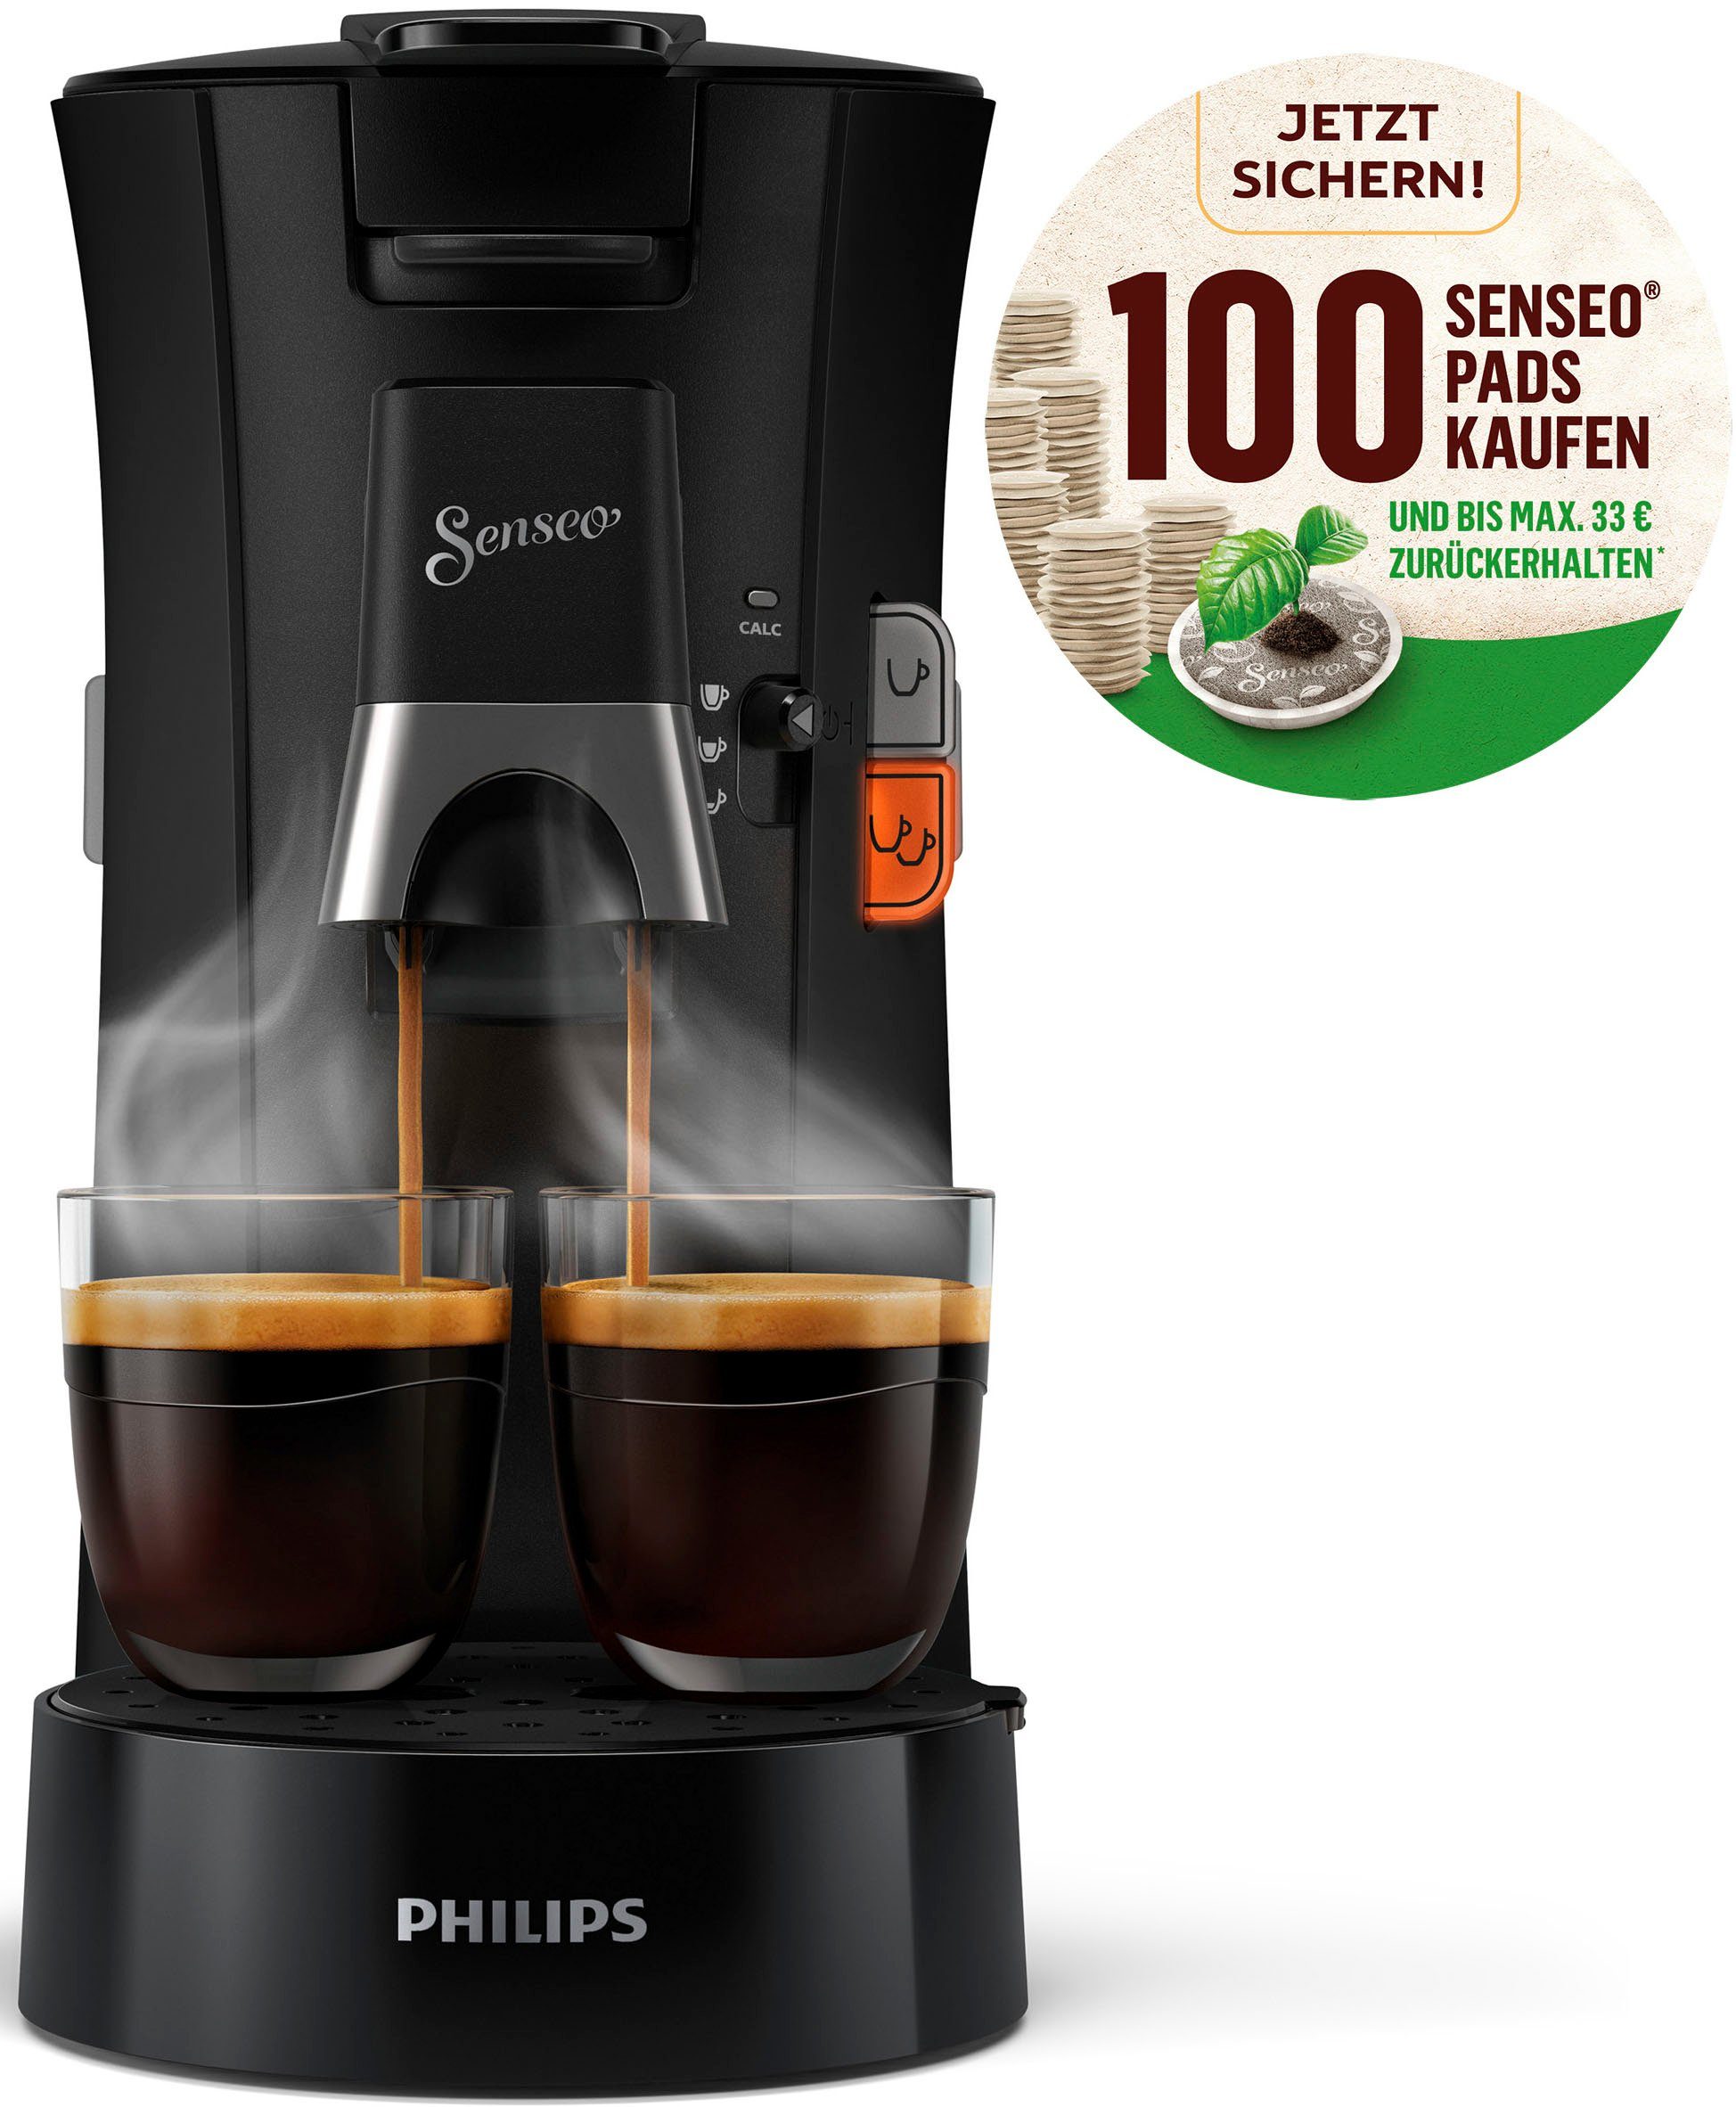 Philips Senseo Kaffeepadmaschine Select CSA230/69, aus 21% recyceltem Plastik, +3 Kaffeespezialitäten, und Crema Plus, 100 Senseo Pads kaufen und bis max.33 € zurückerhalten